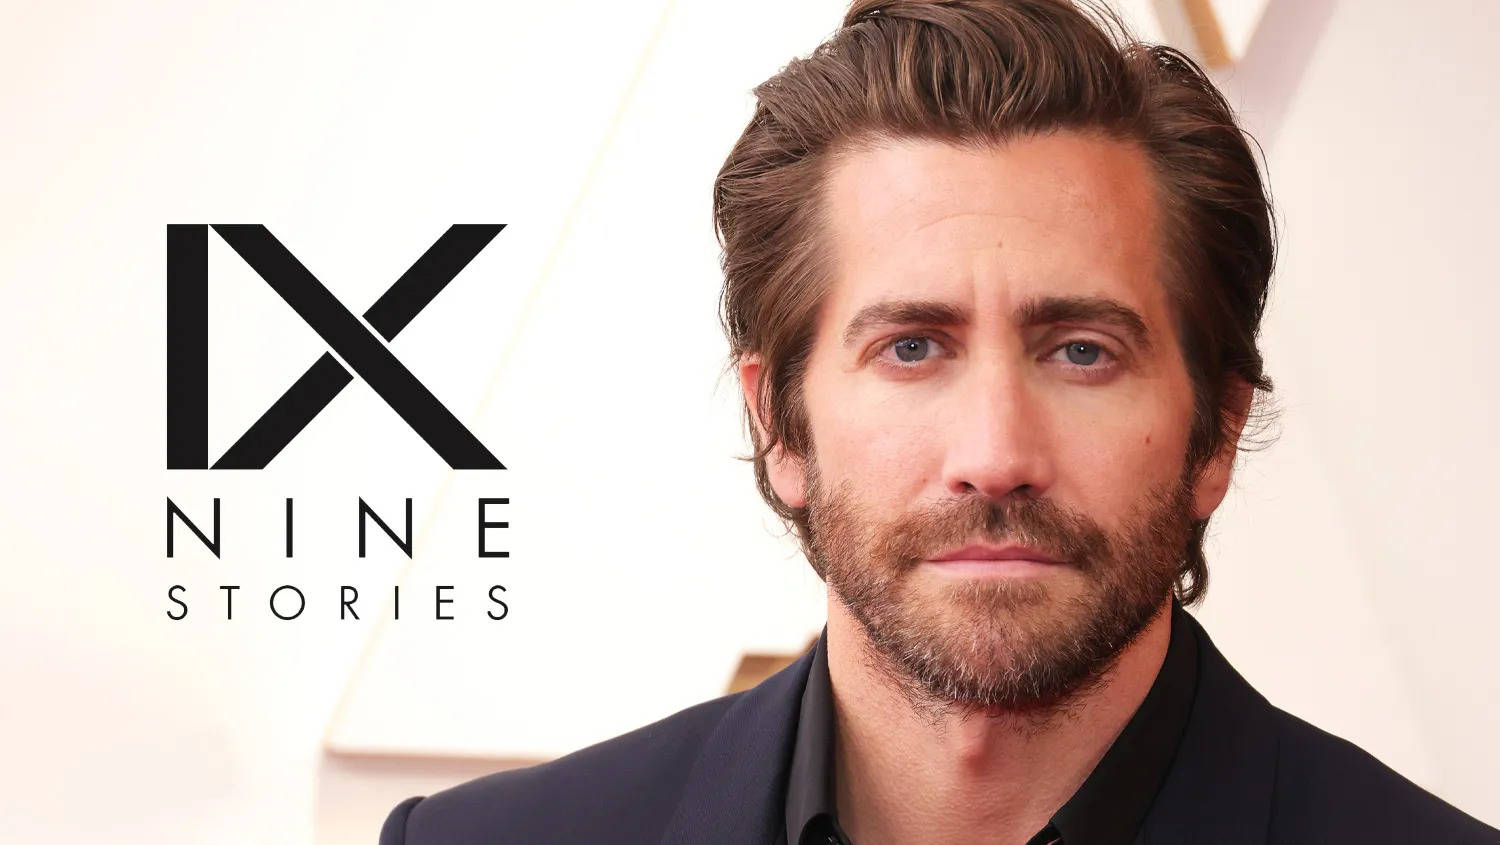 ‘रोड हाउस’ के सुपरहिट होते ही Jake Gyllenhaal की हुई चांदी, एक्टर ने साइन की इतनी बड़ी डील